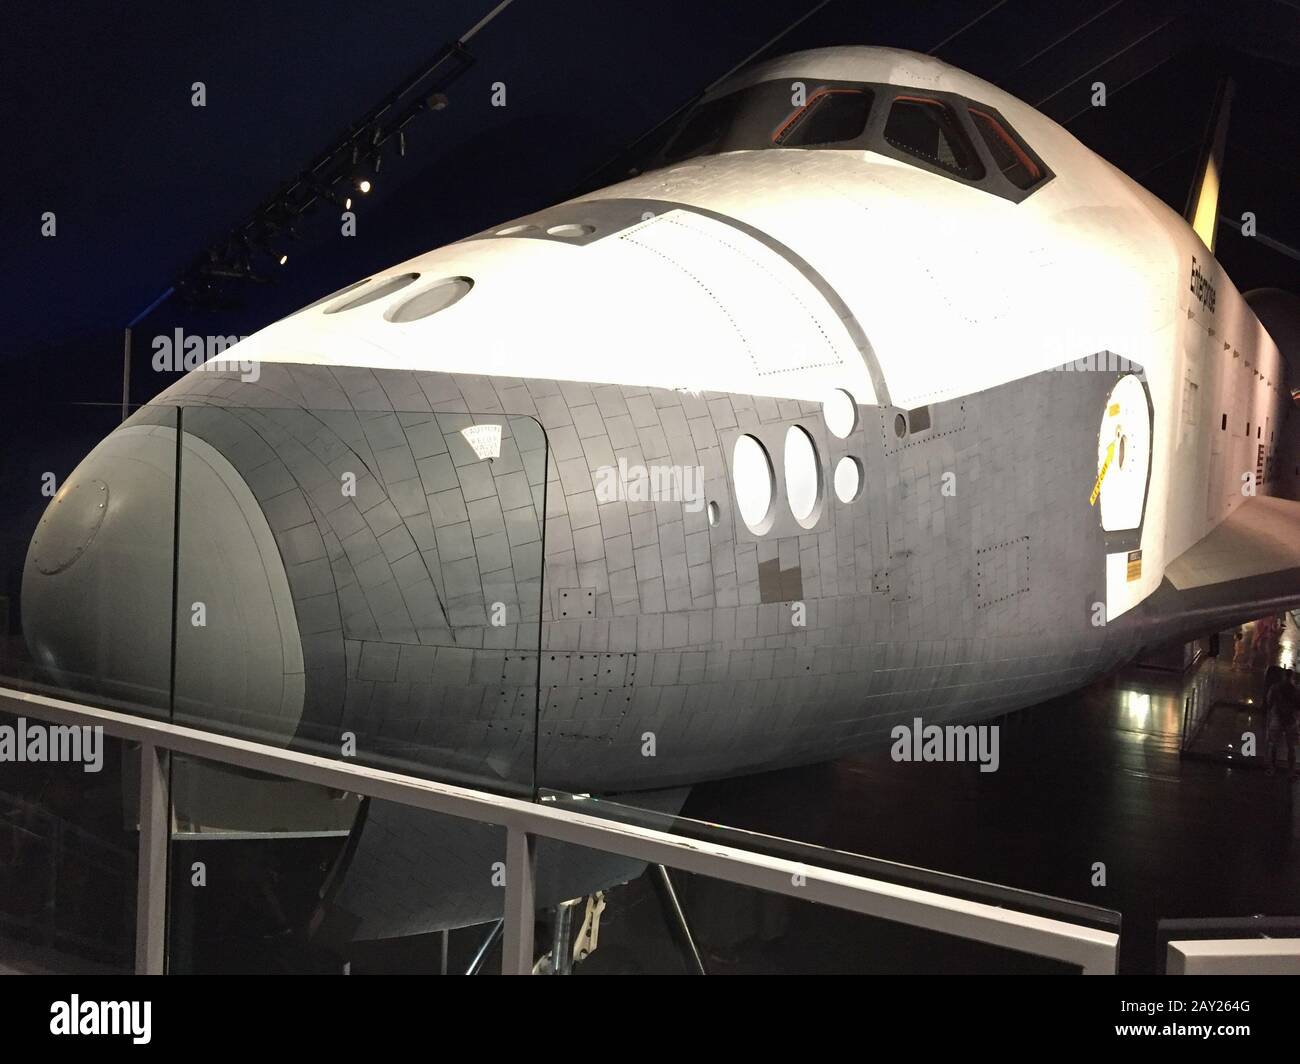 New York, États-Unis - 20 août 2018 : vue de la navette spatiale Enterprise exposée au USS Intrepid Sea, Air & Space Museum, un avion historique carr Banque D'Images